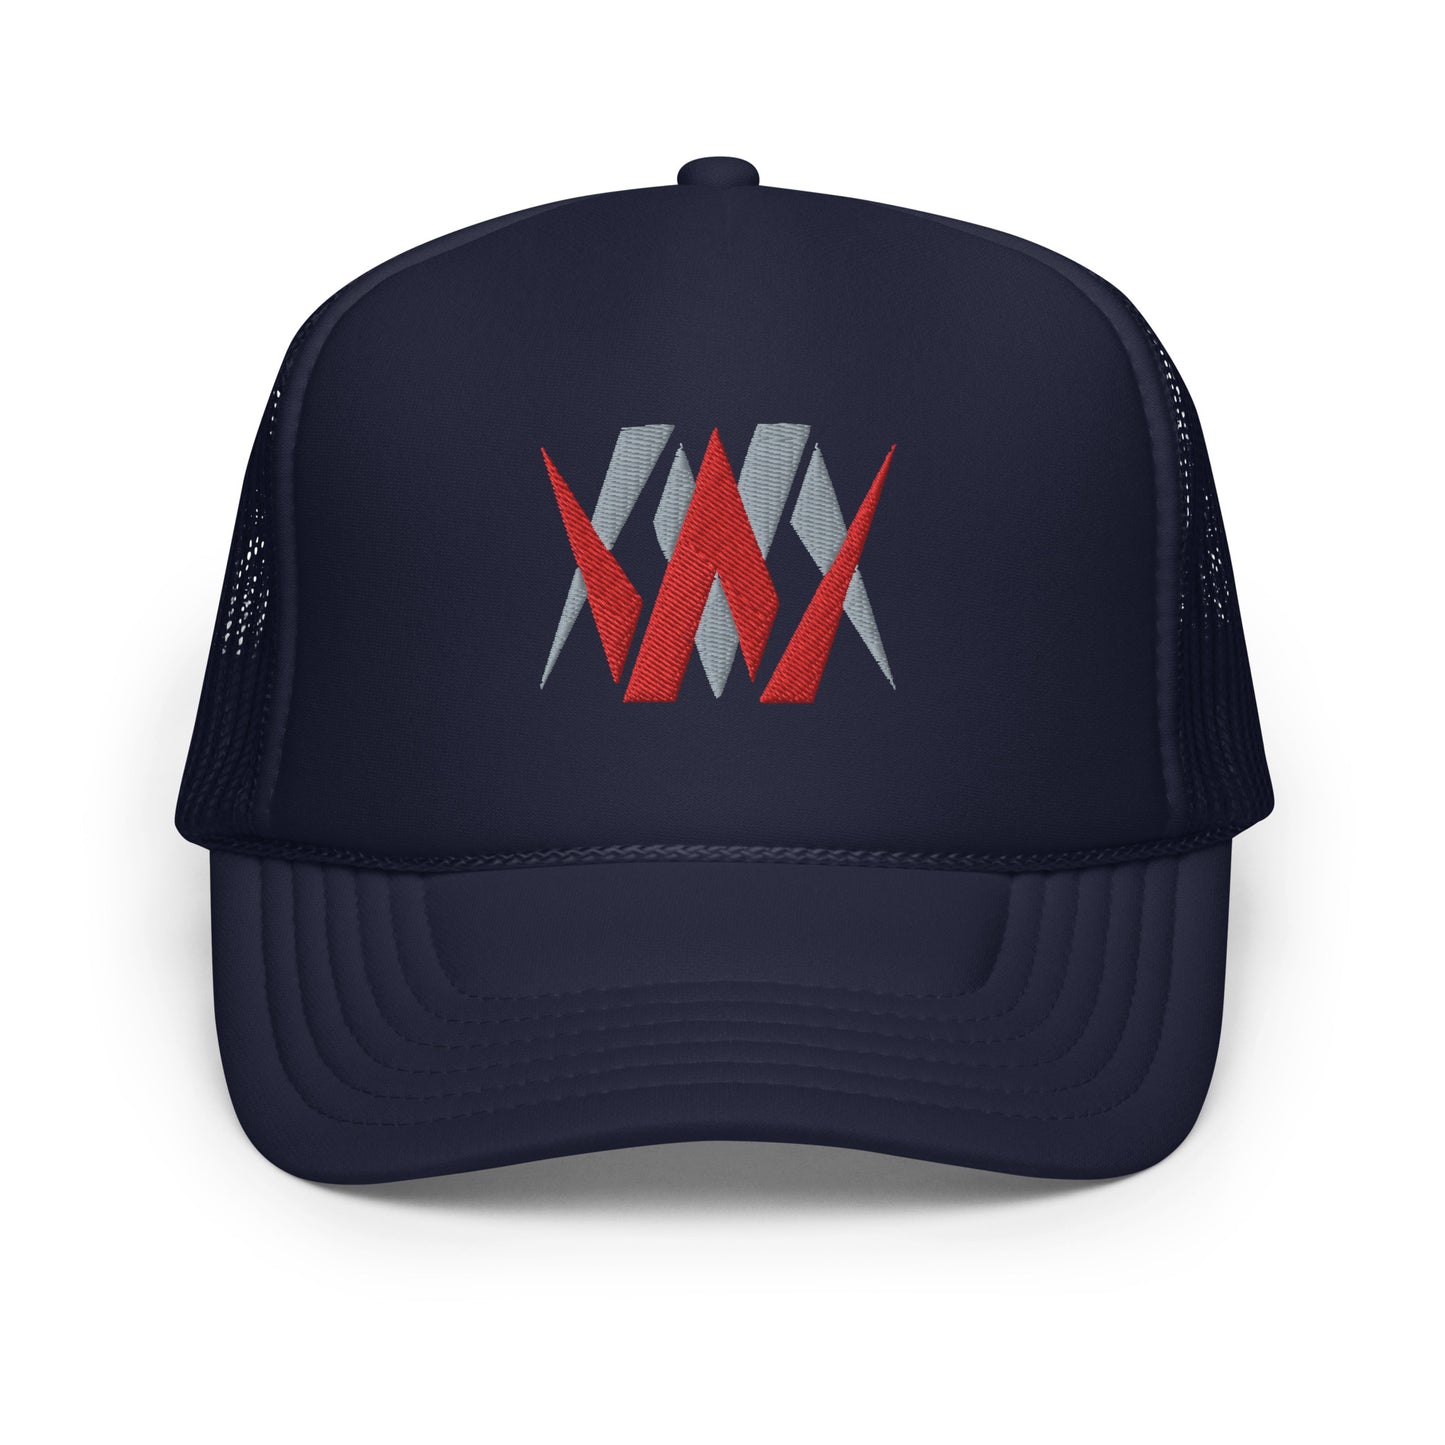 WM (WatchMan) Foam trucker hat